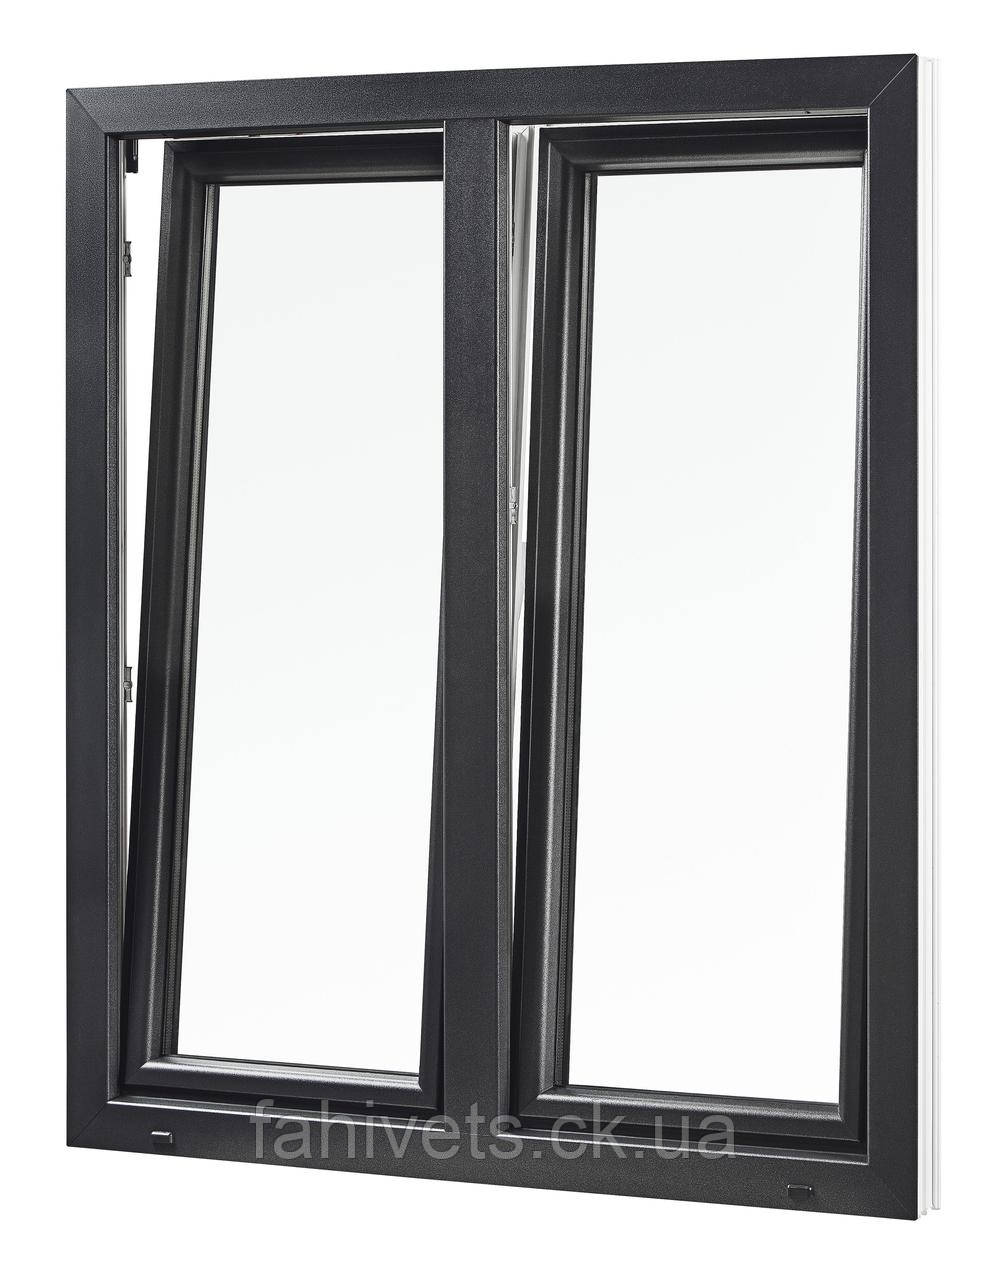 Вікна типу "Преміум" із профілю WDS 8S, з двокамерним енергозберігаючим склопакетом,розміри (1300х1400)